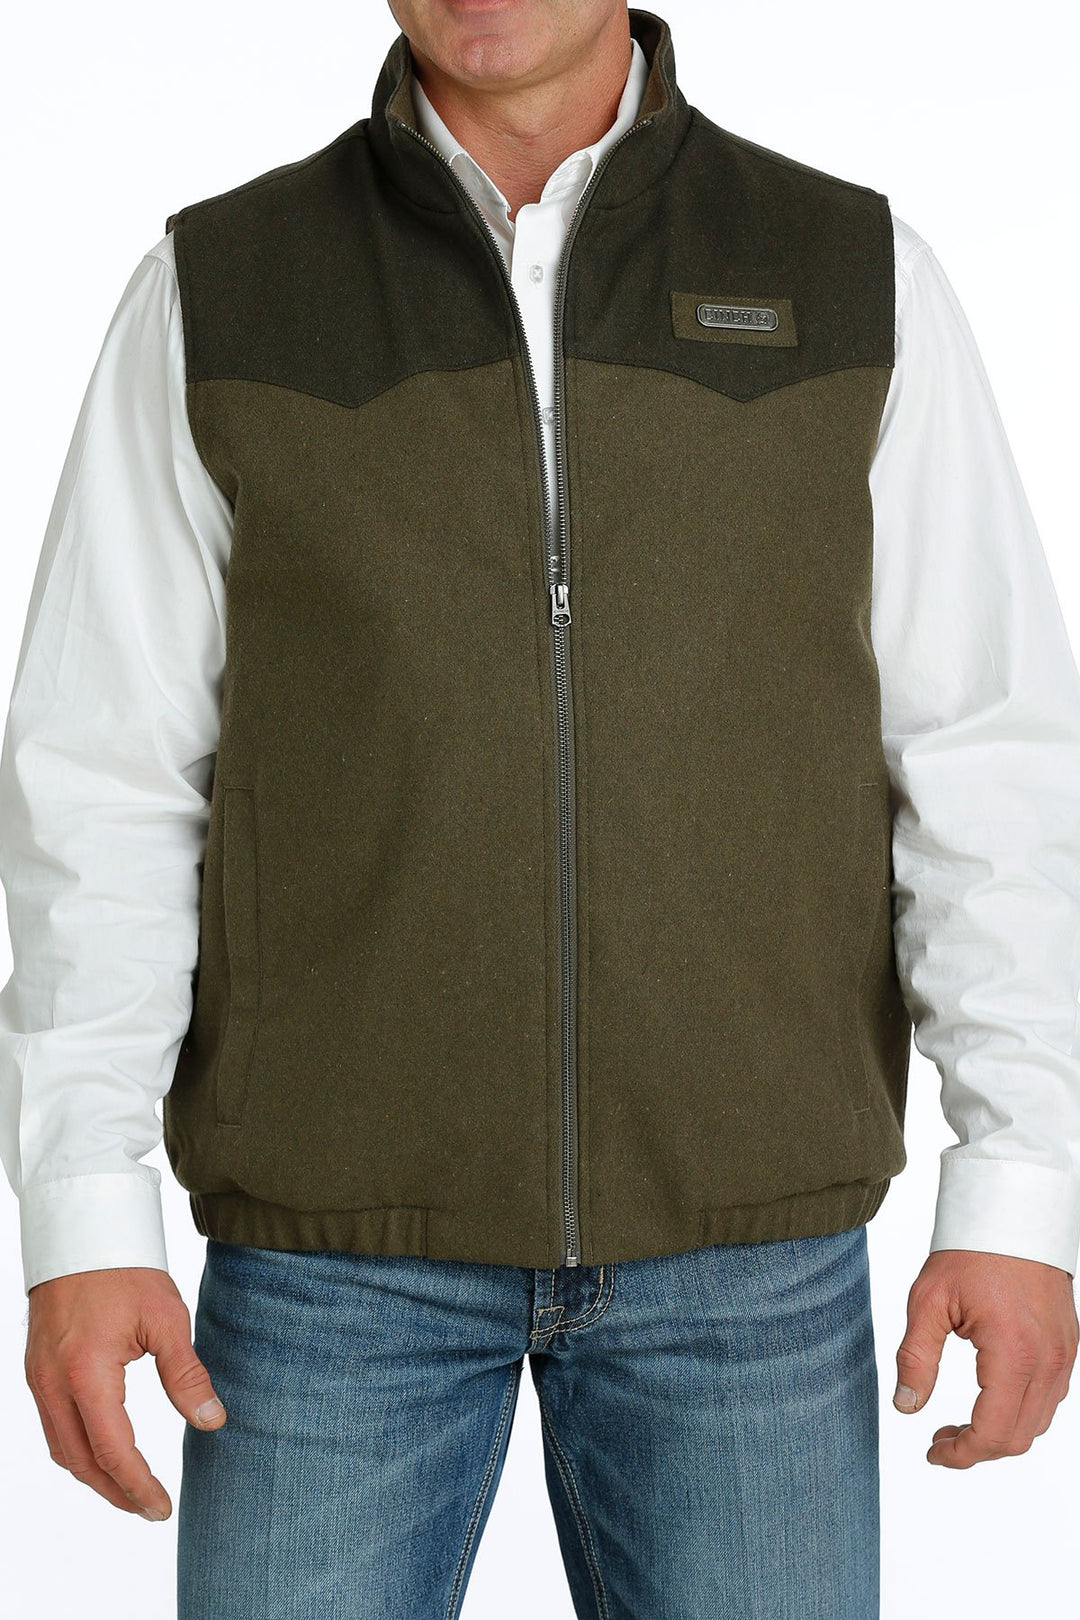 Cinch Men's Concealed Carry Olive Wooly Vest